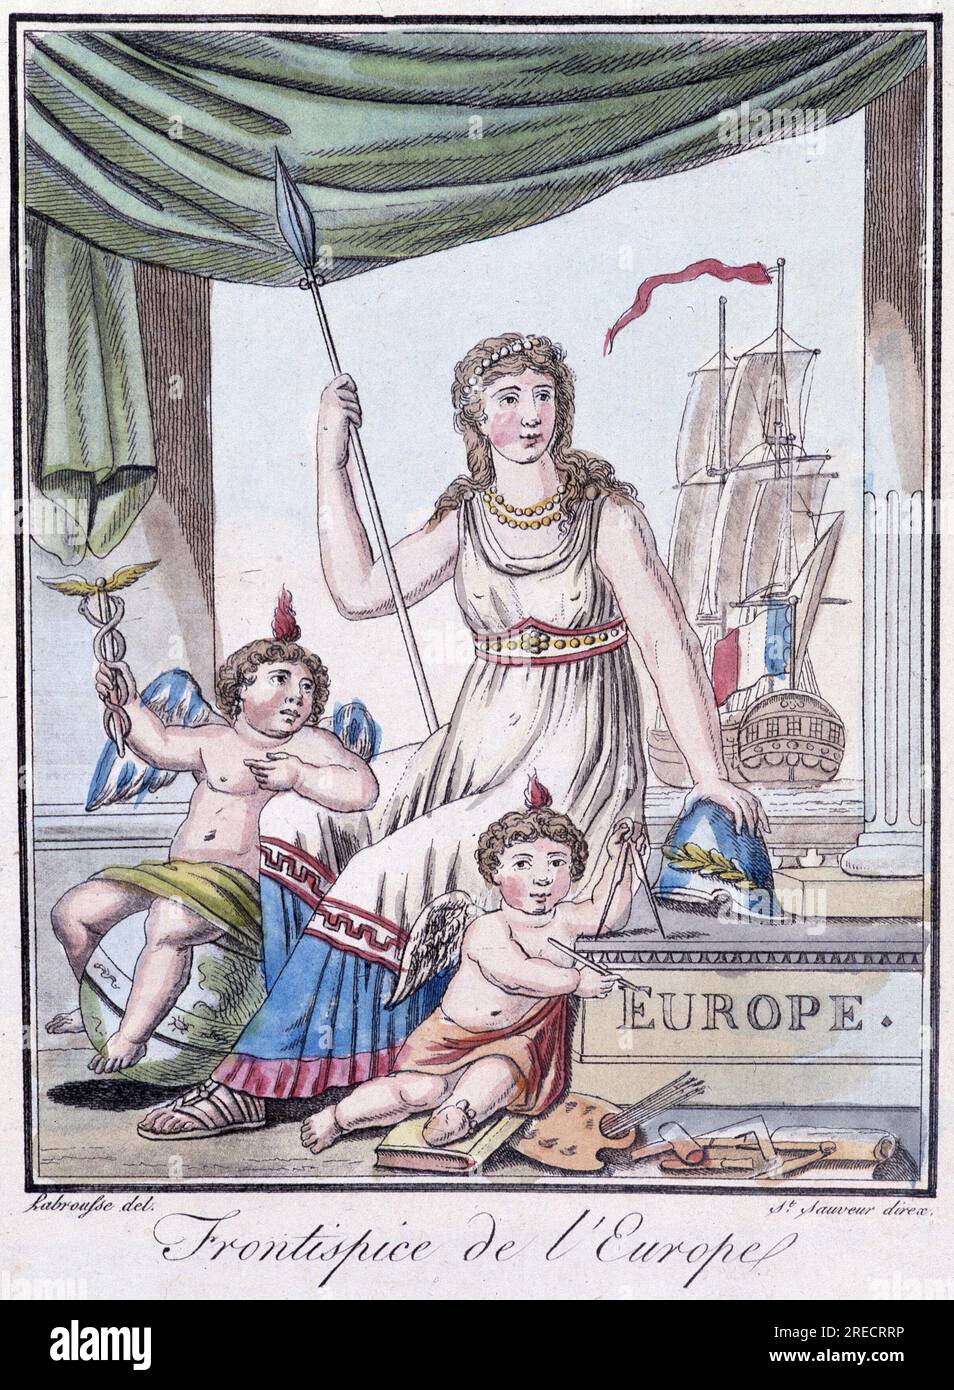 Encyclopedie des voyages, par Grasset St Sauveur, Paris, ed. Daroy, 1796 : l'Europe, femme et deux enfants. Stock Photo